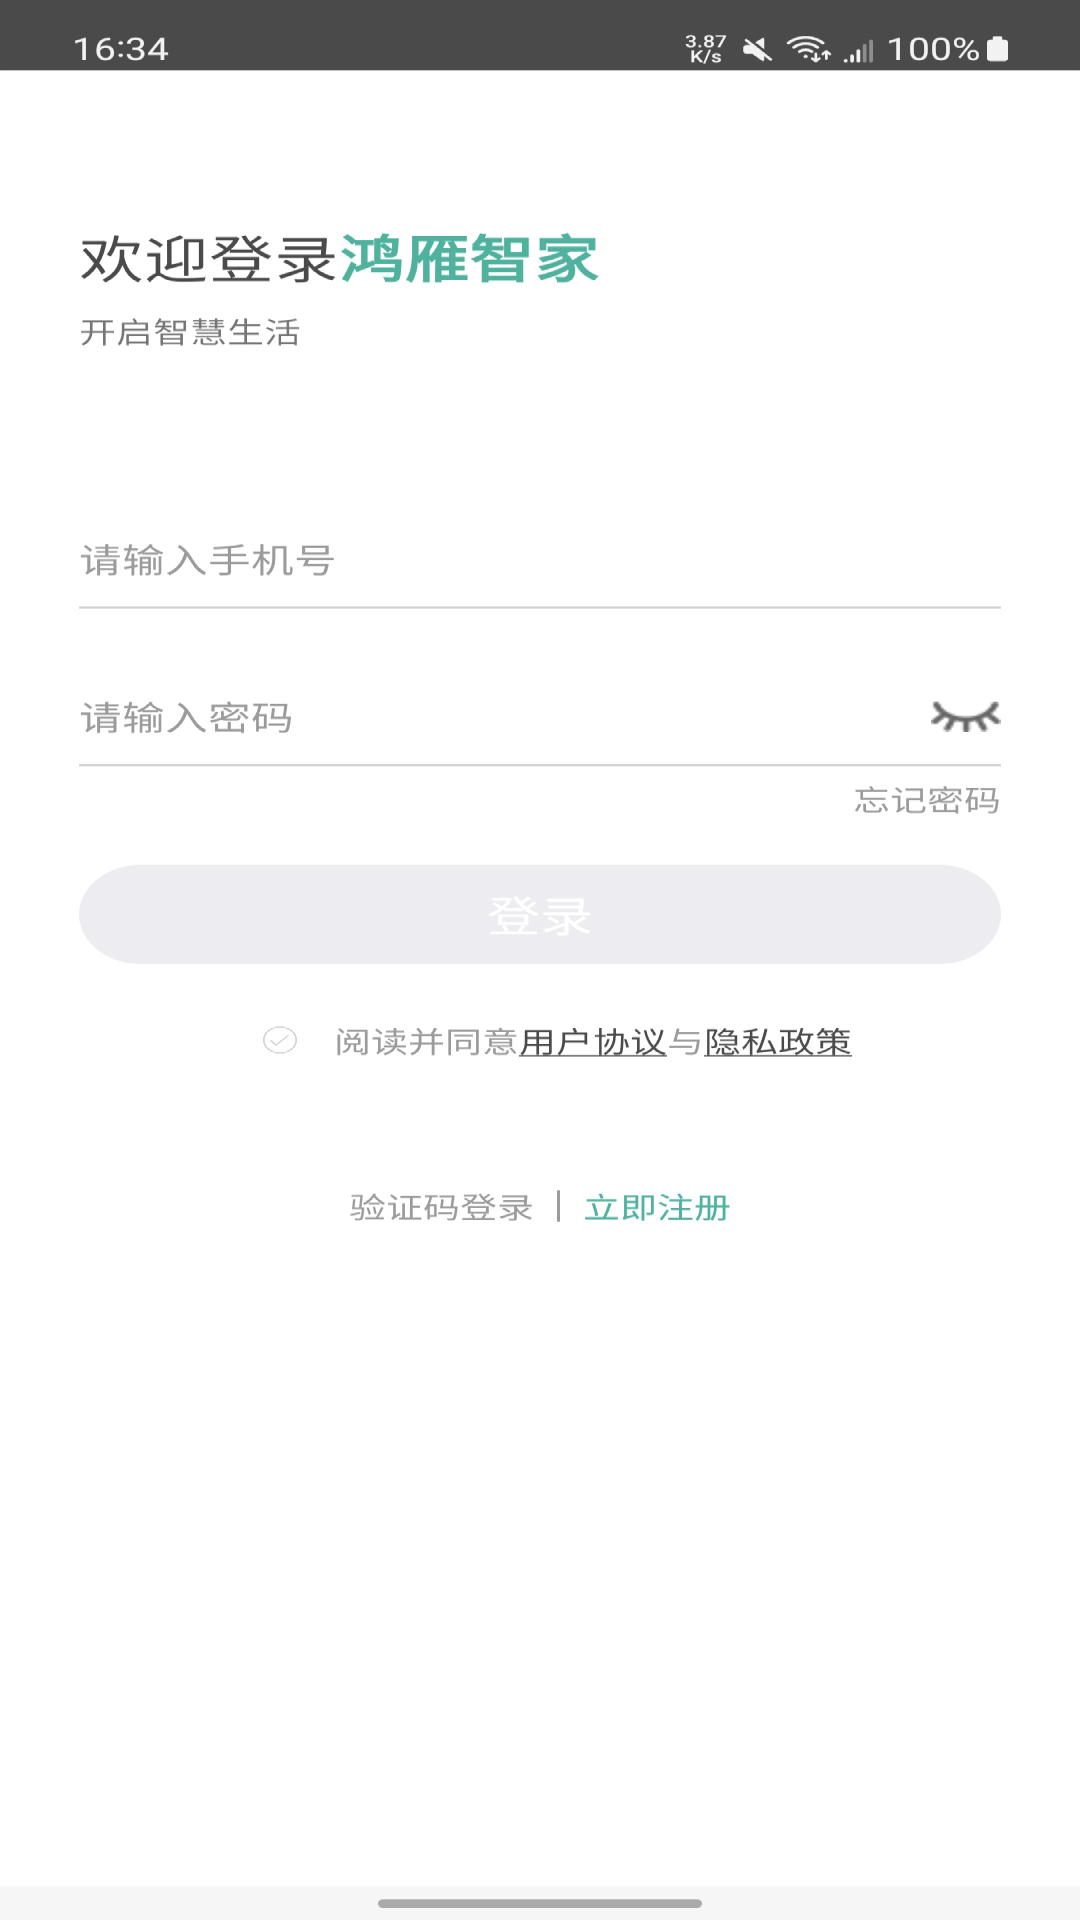 鸿雁智家app下载,鸿雁智家下载app官方版 v2.1.0